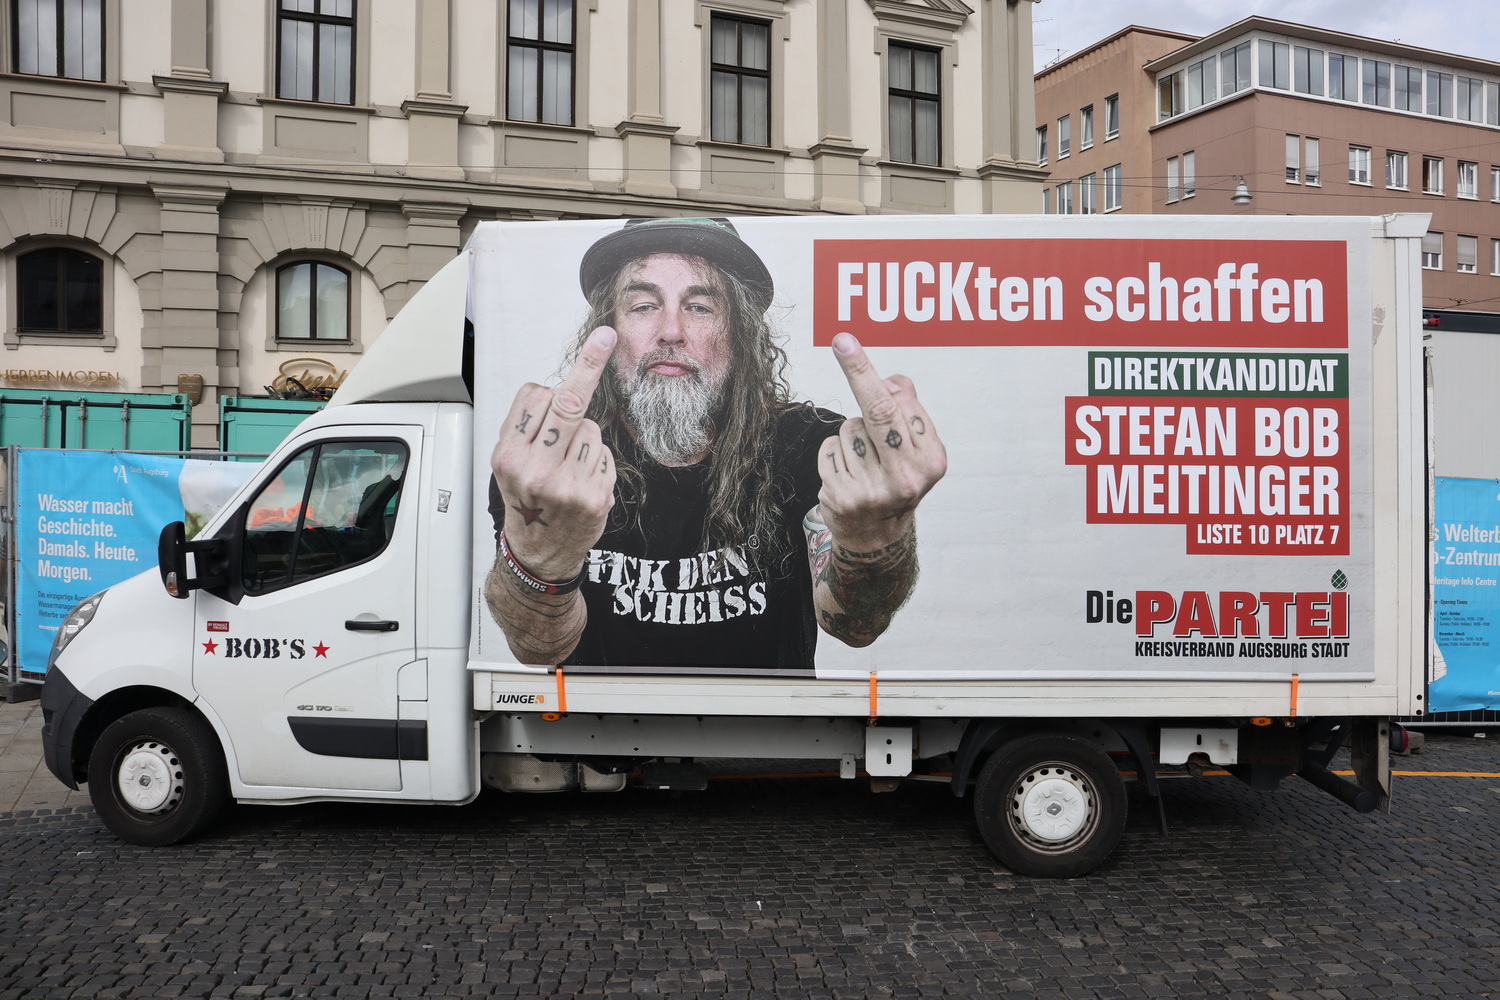 Werbemobil des designierten Kandidaten Meitinger- Sartirepartei "Die Partei"